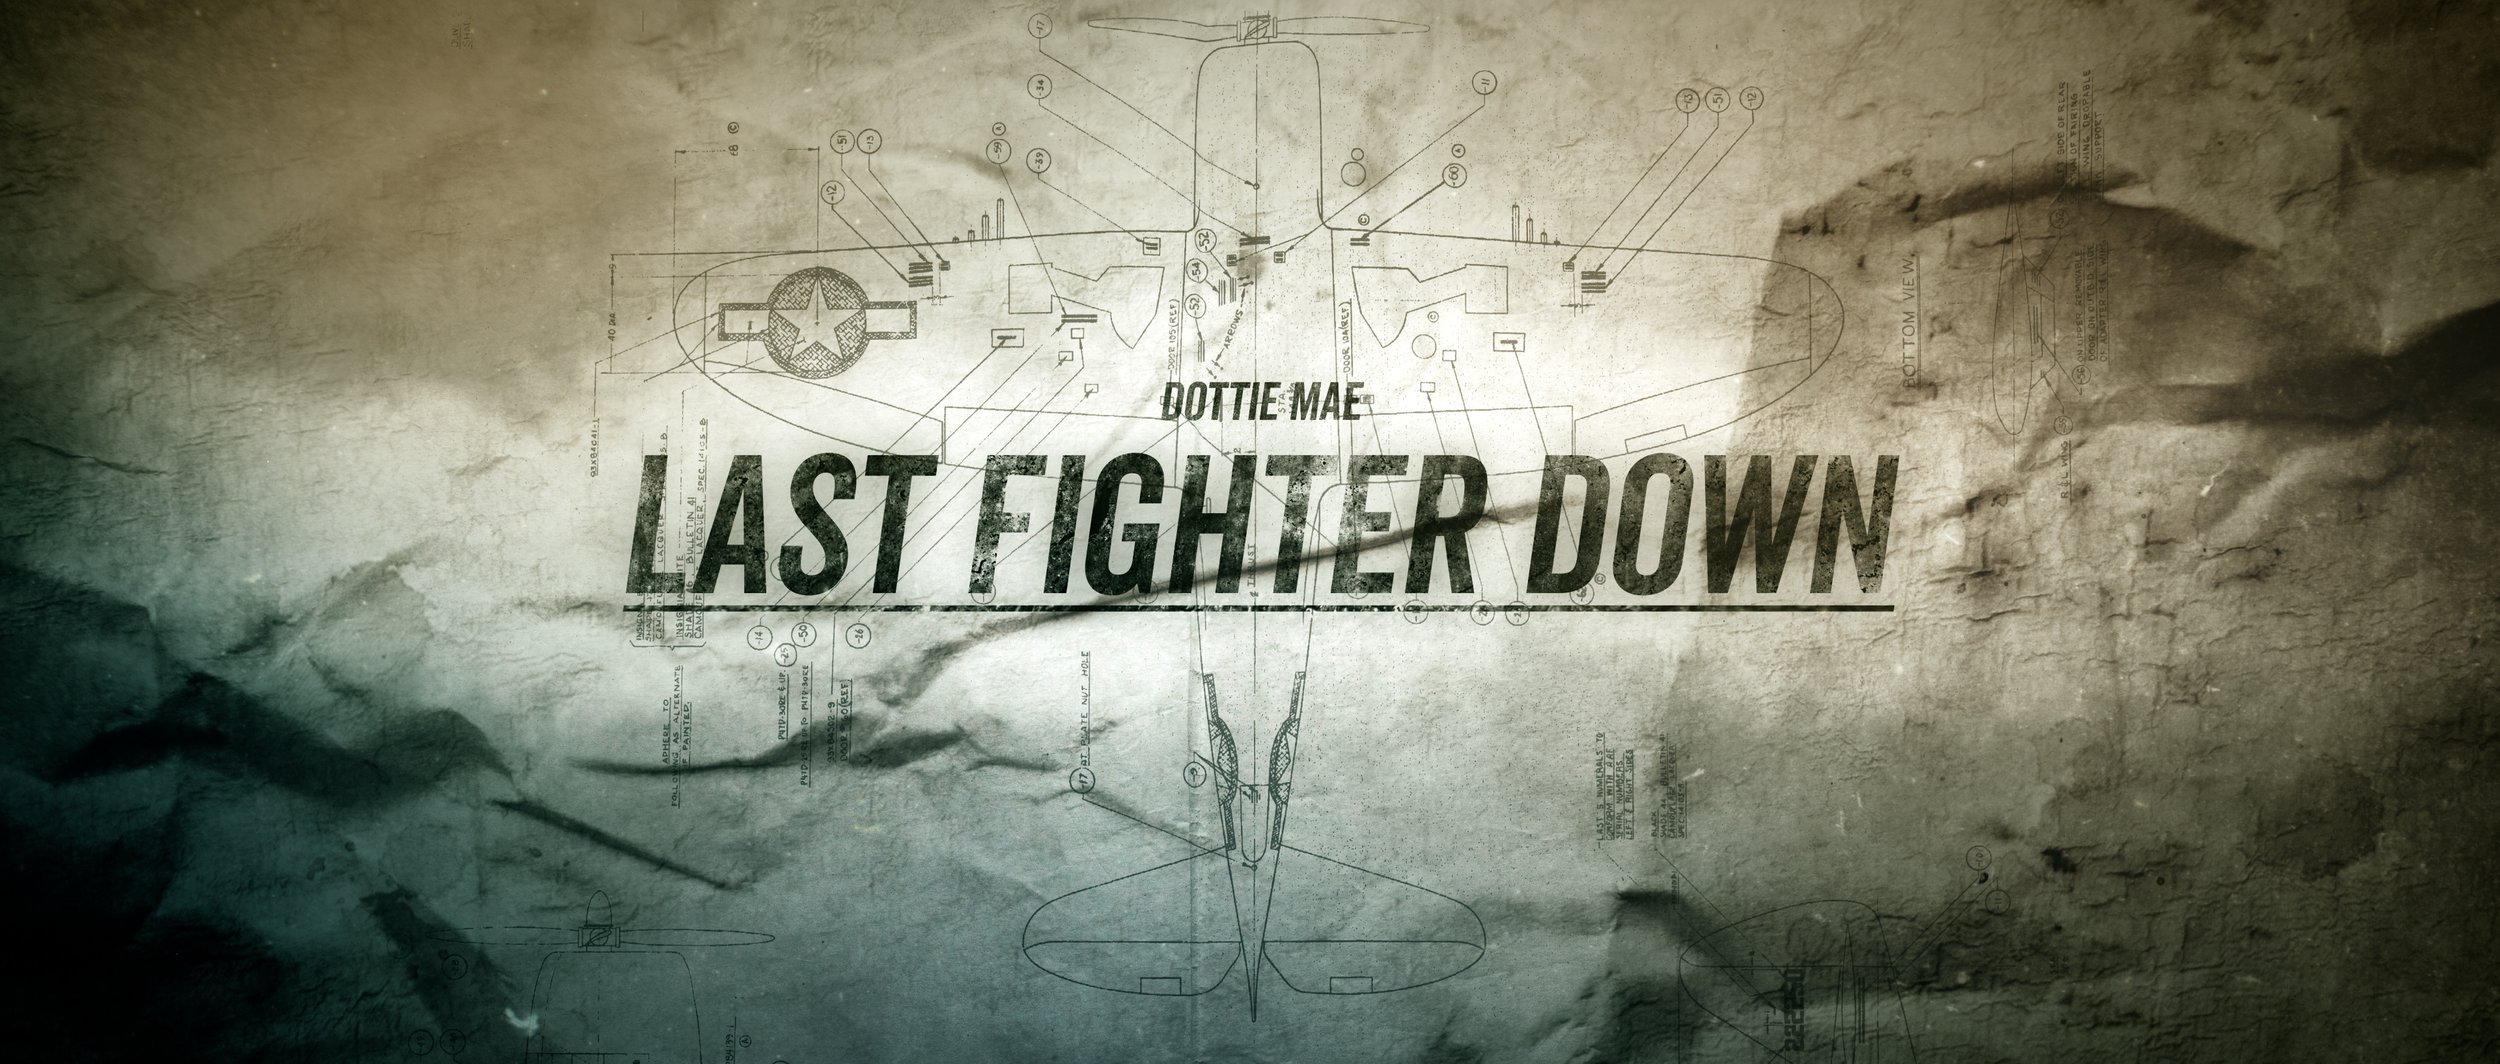 K4S_Dottie Mae_Last Fighter Down_FINAL Shortened_4K_v2.00_00_41_02.Still012.jpg